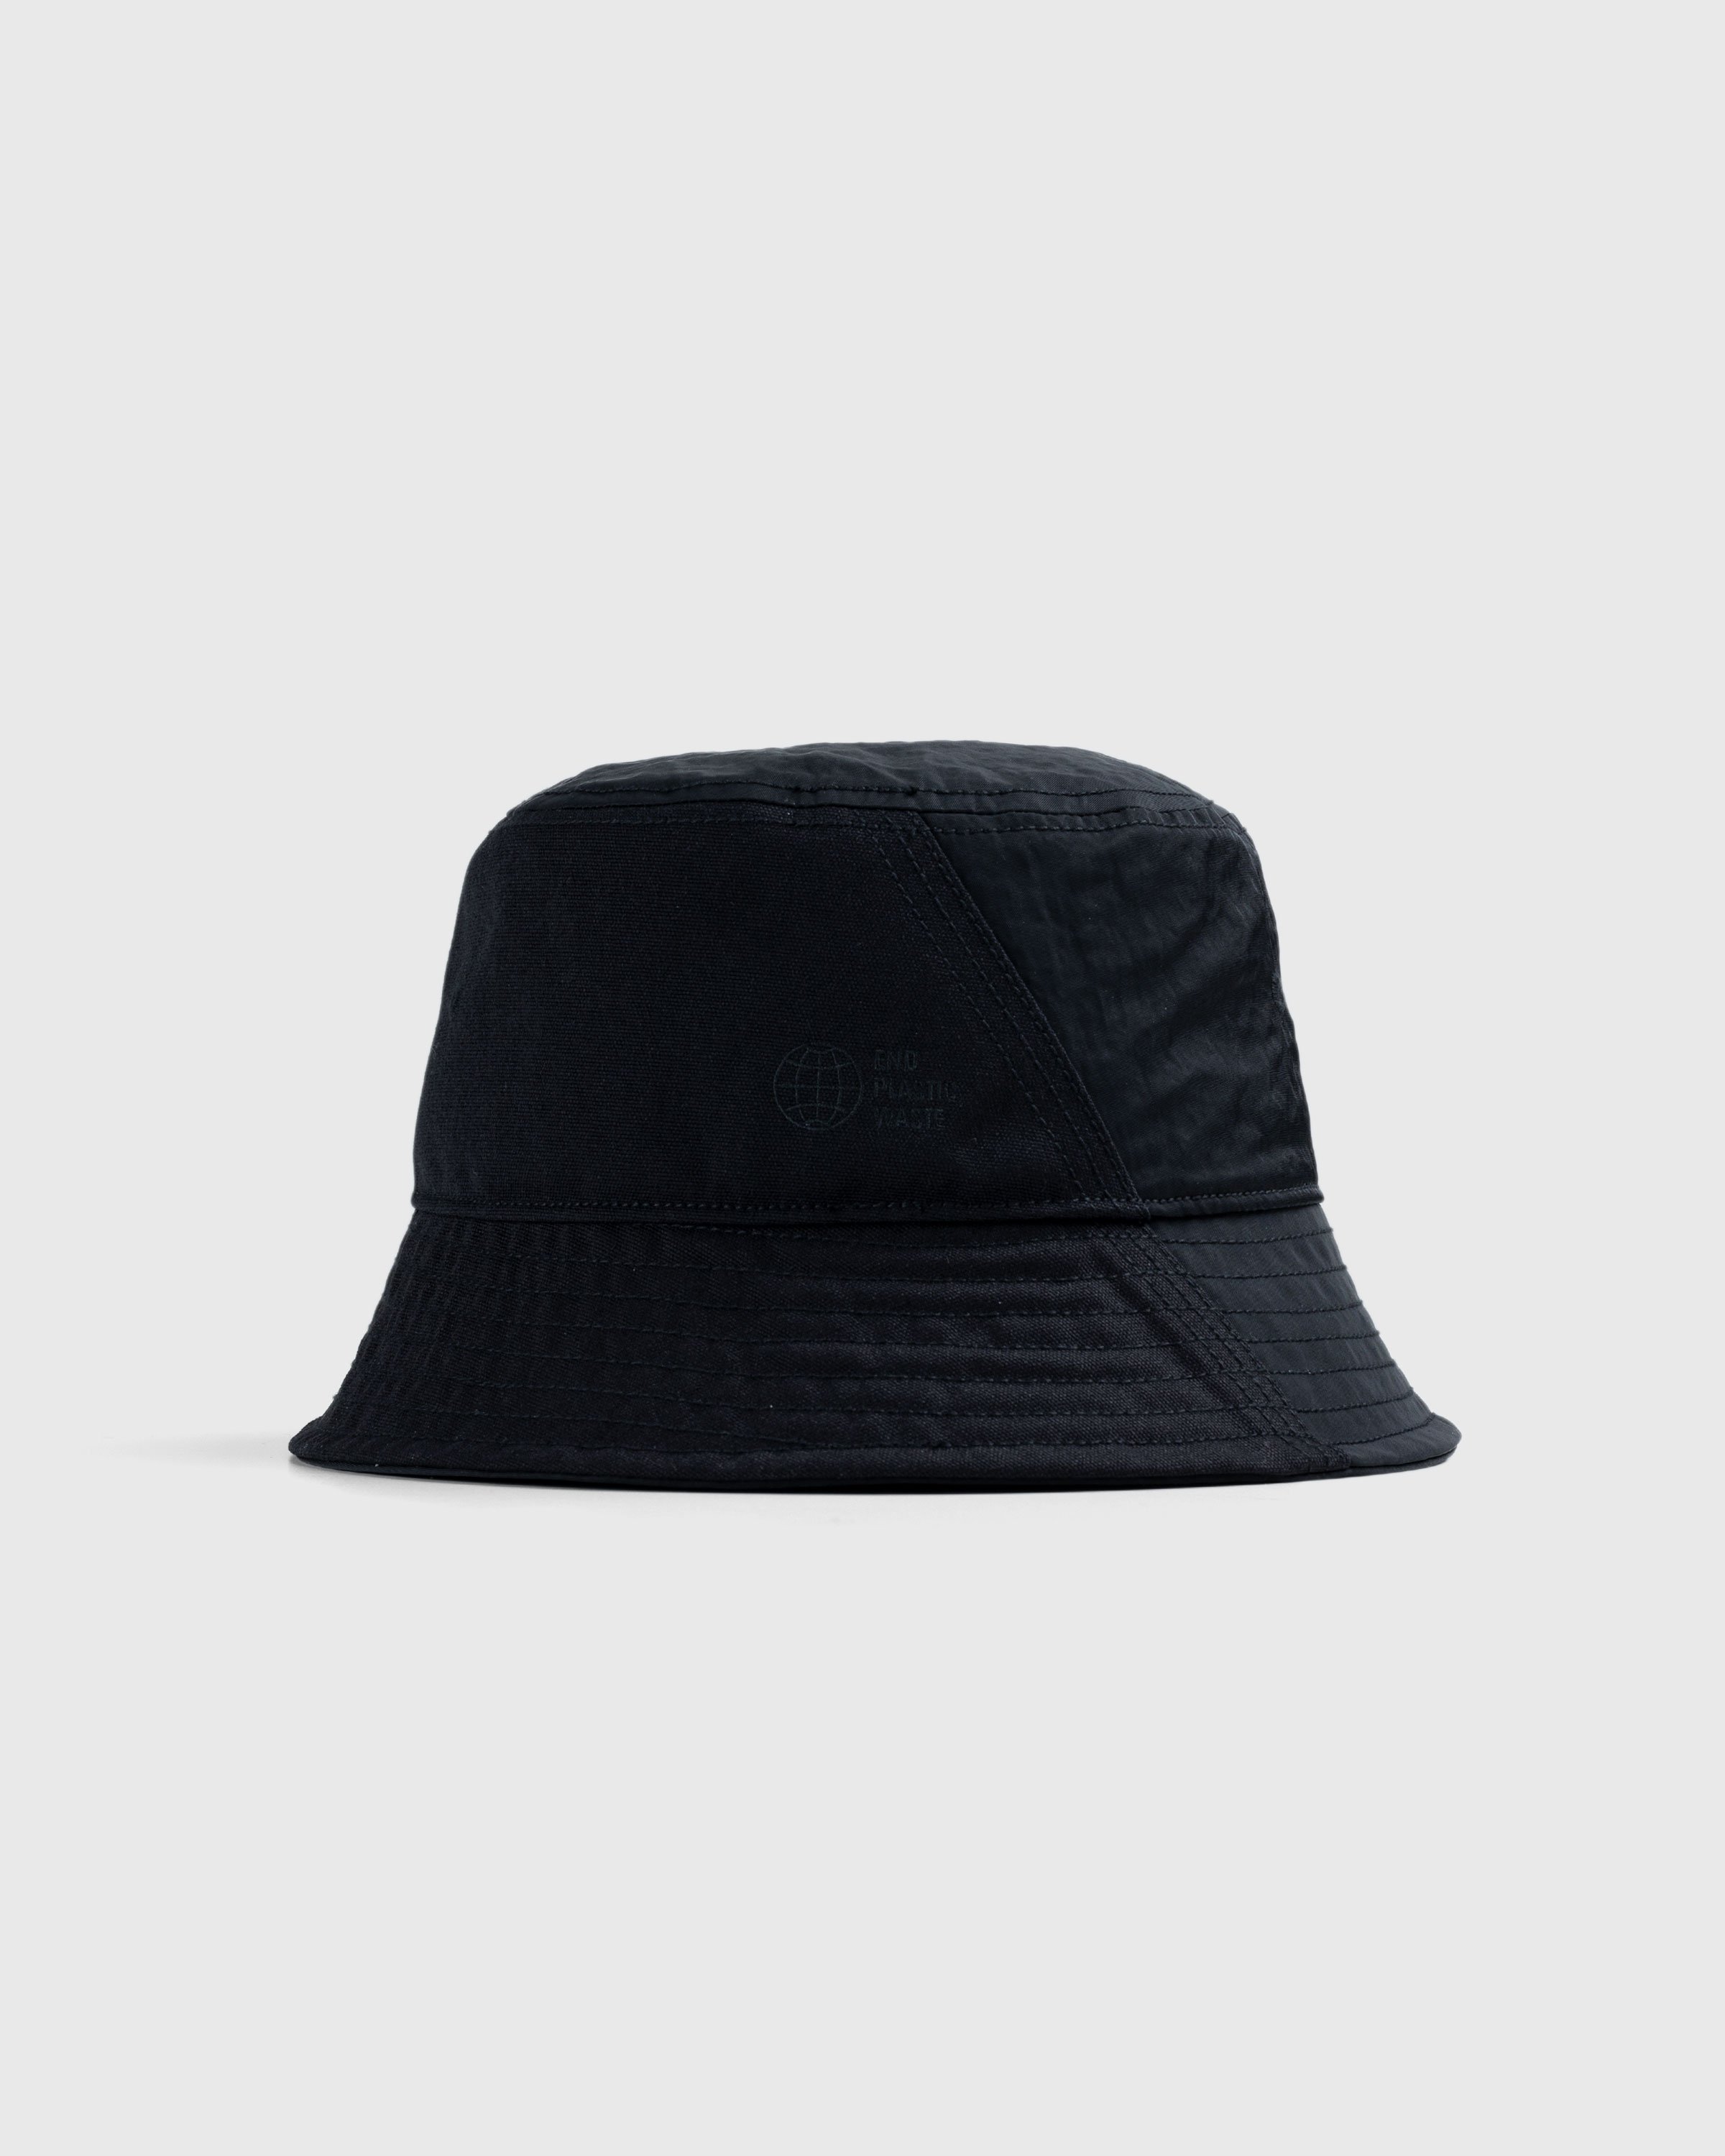 Y-3 - Bucket Hat Black - Accessories - Black - Image 2